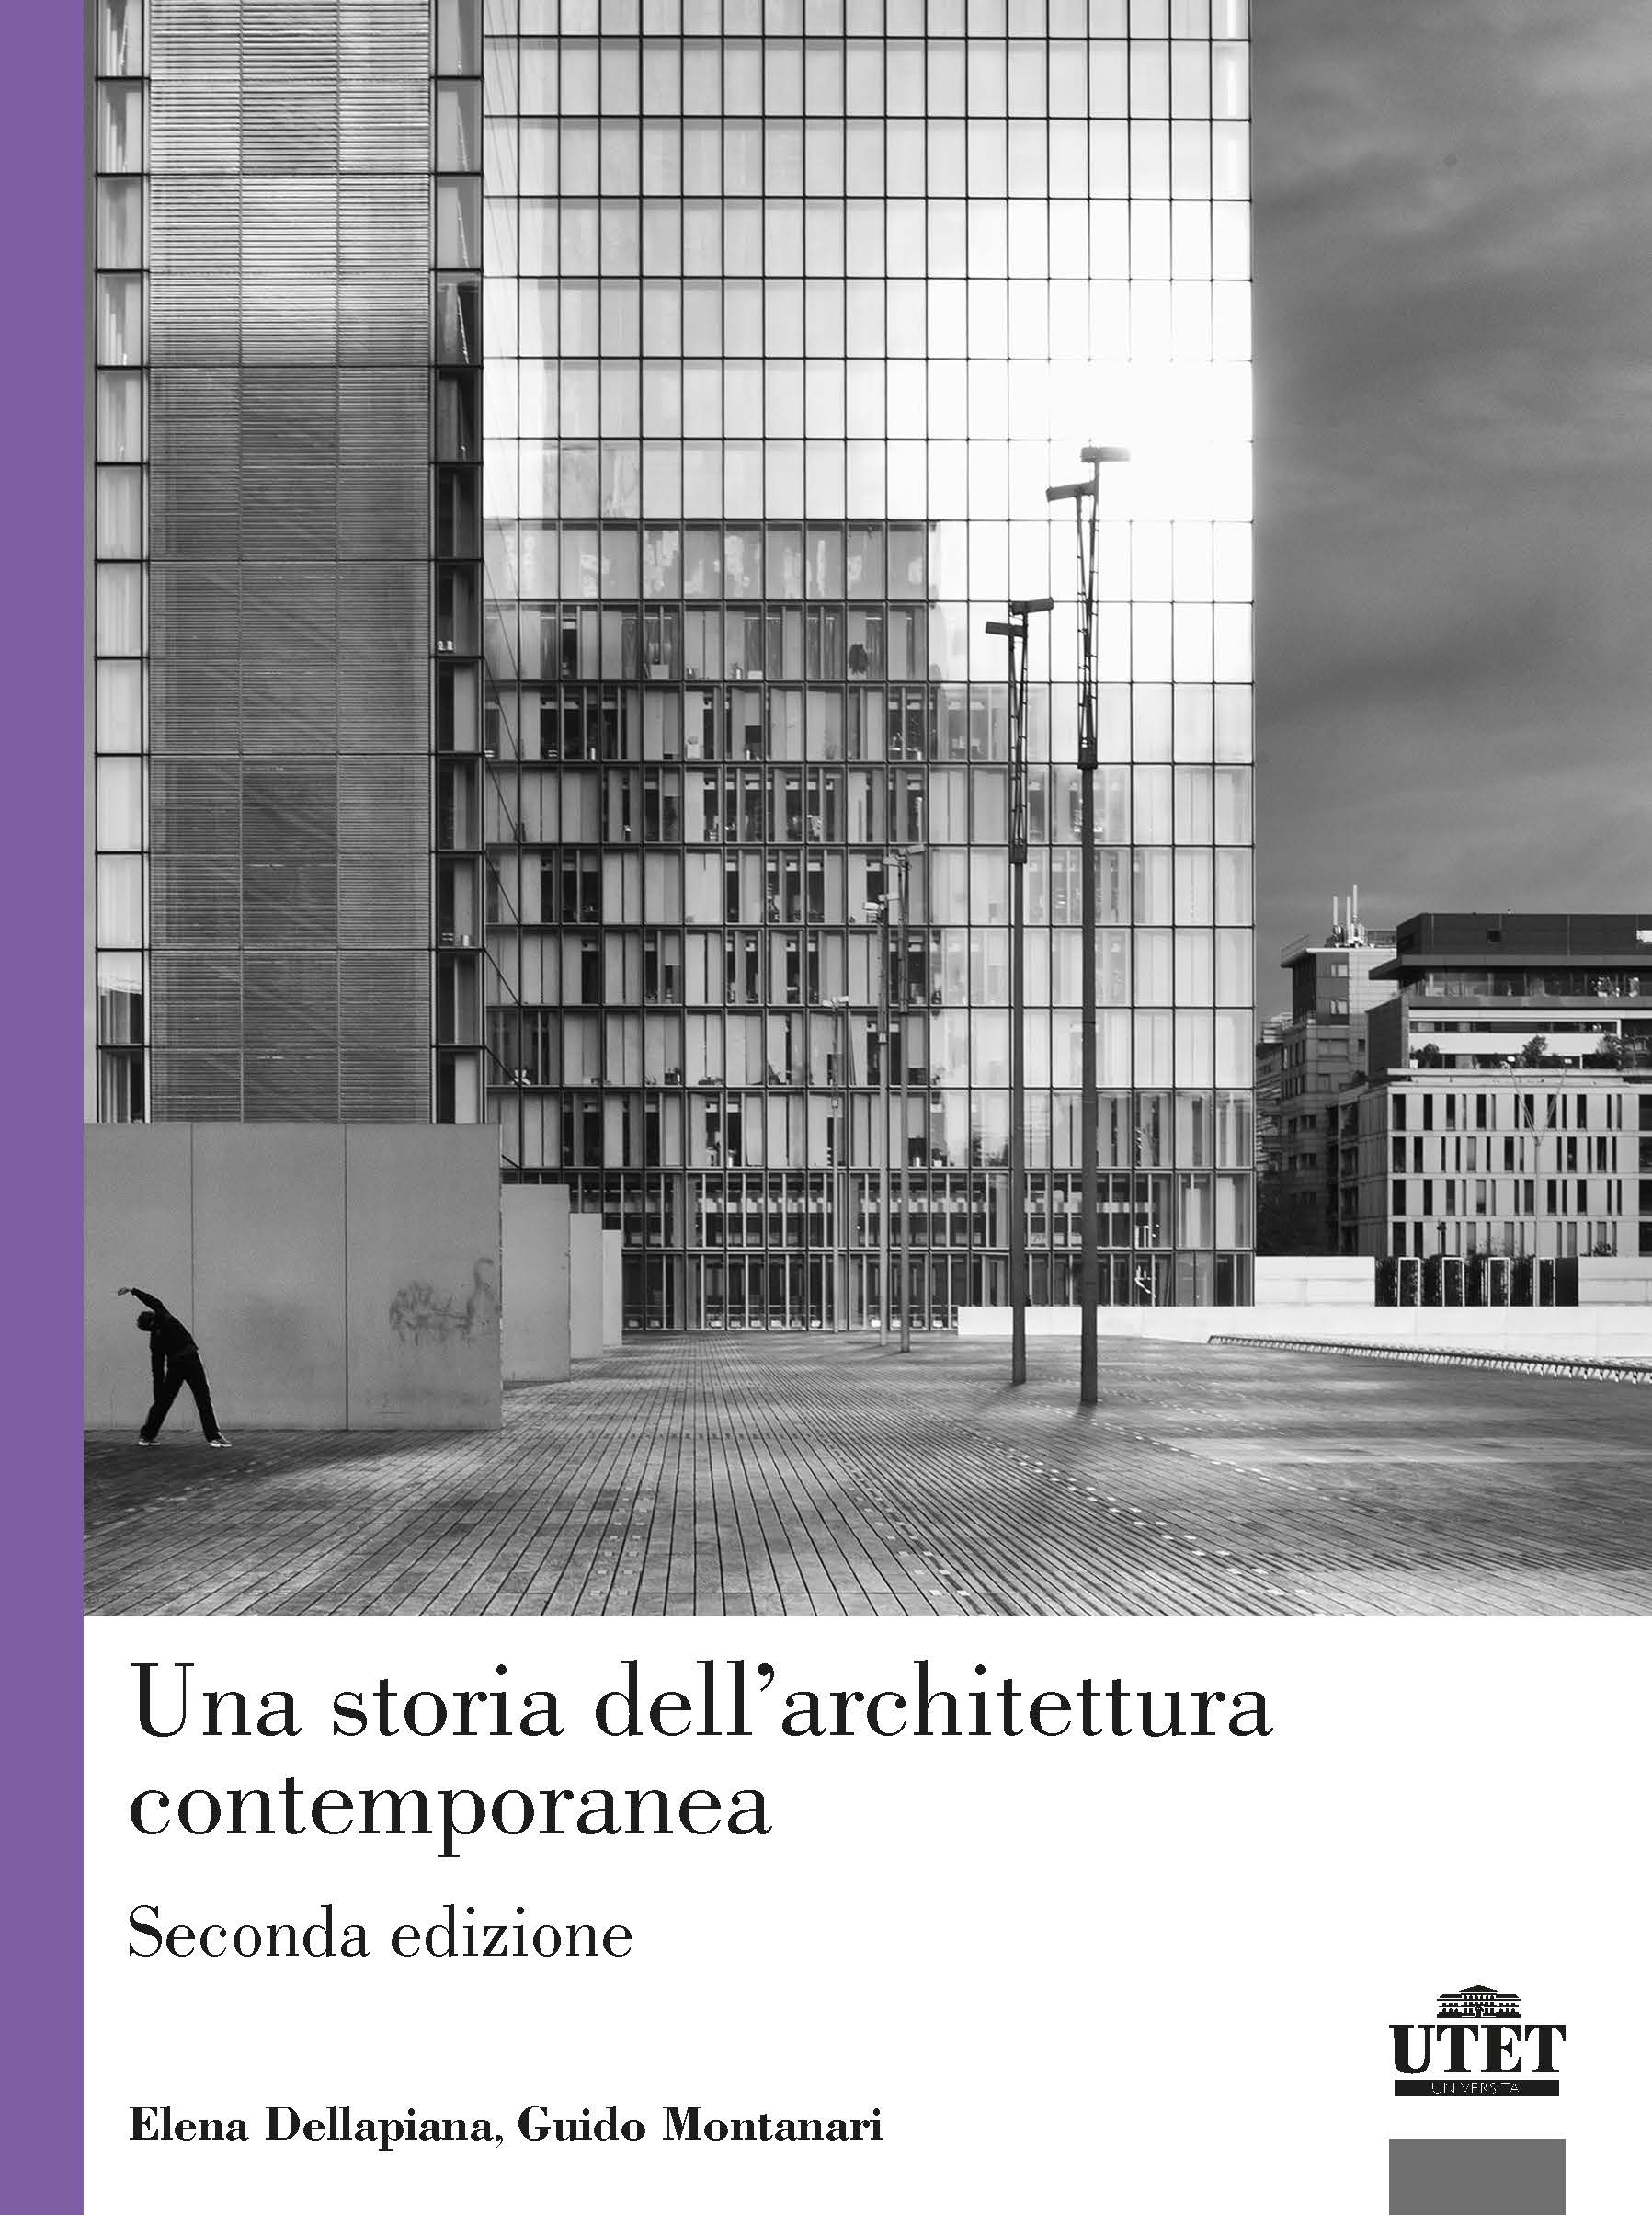 Una storia dell’architettura contemporanea